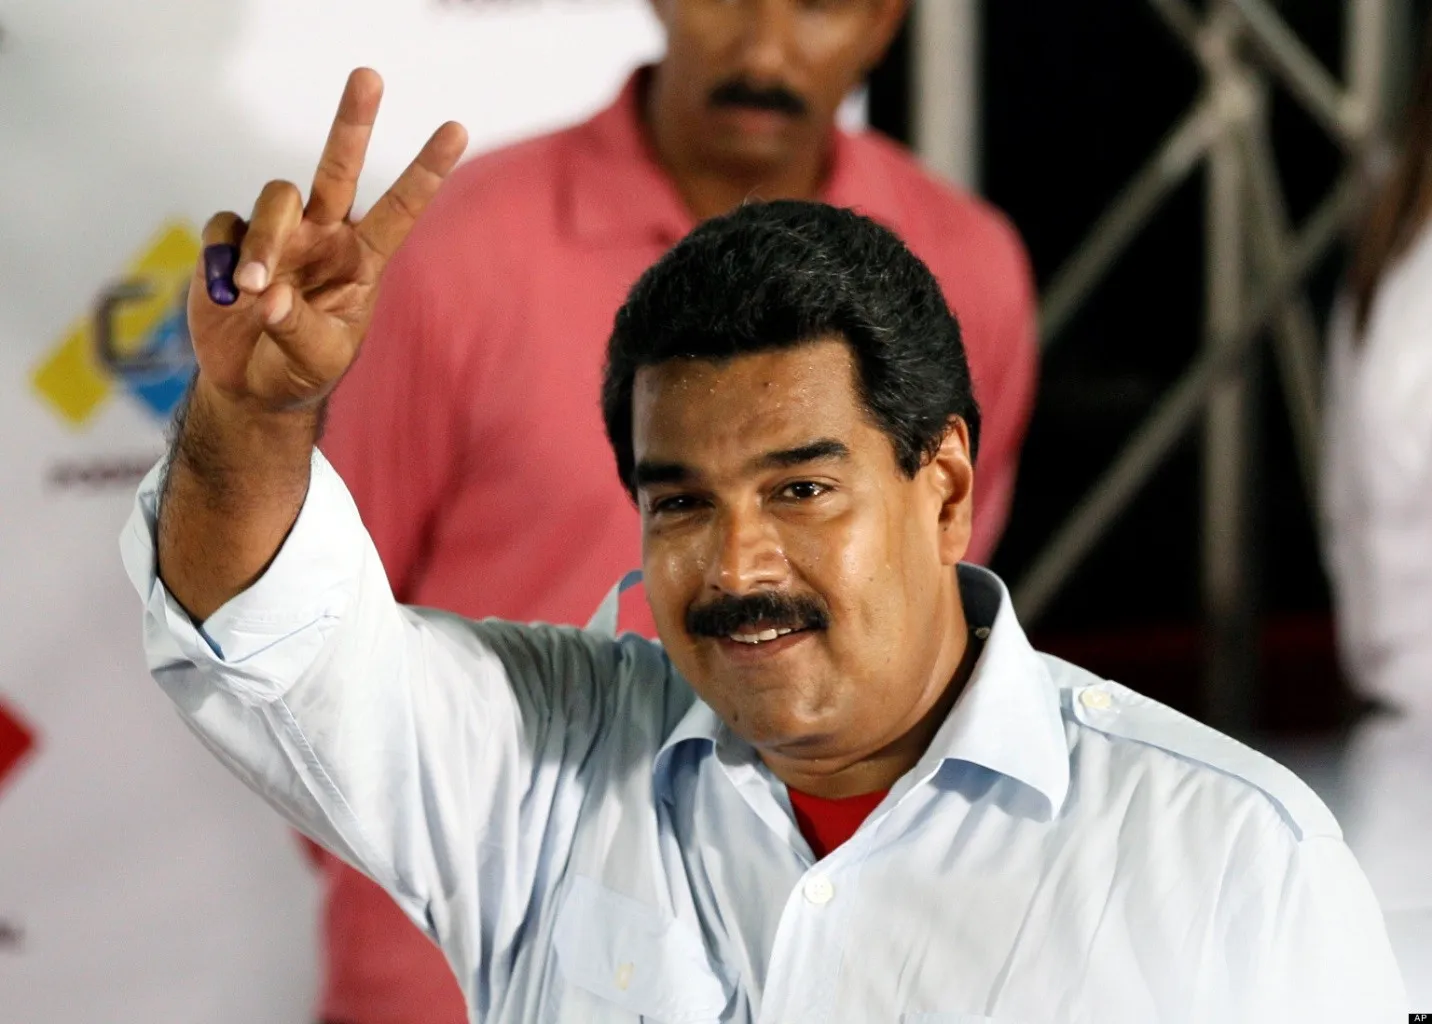 Khủng hoảng tai Venezuela ngày càng trầm trọng, các nước kêu gọi đối thoại